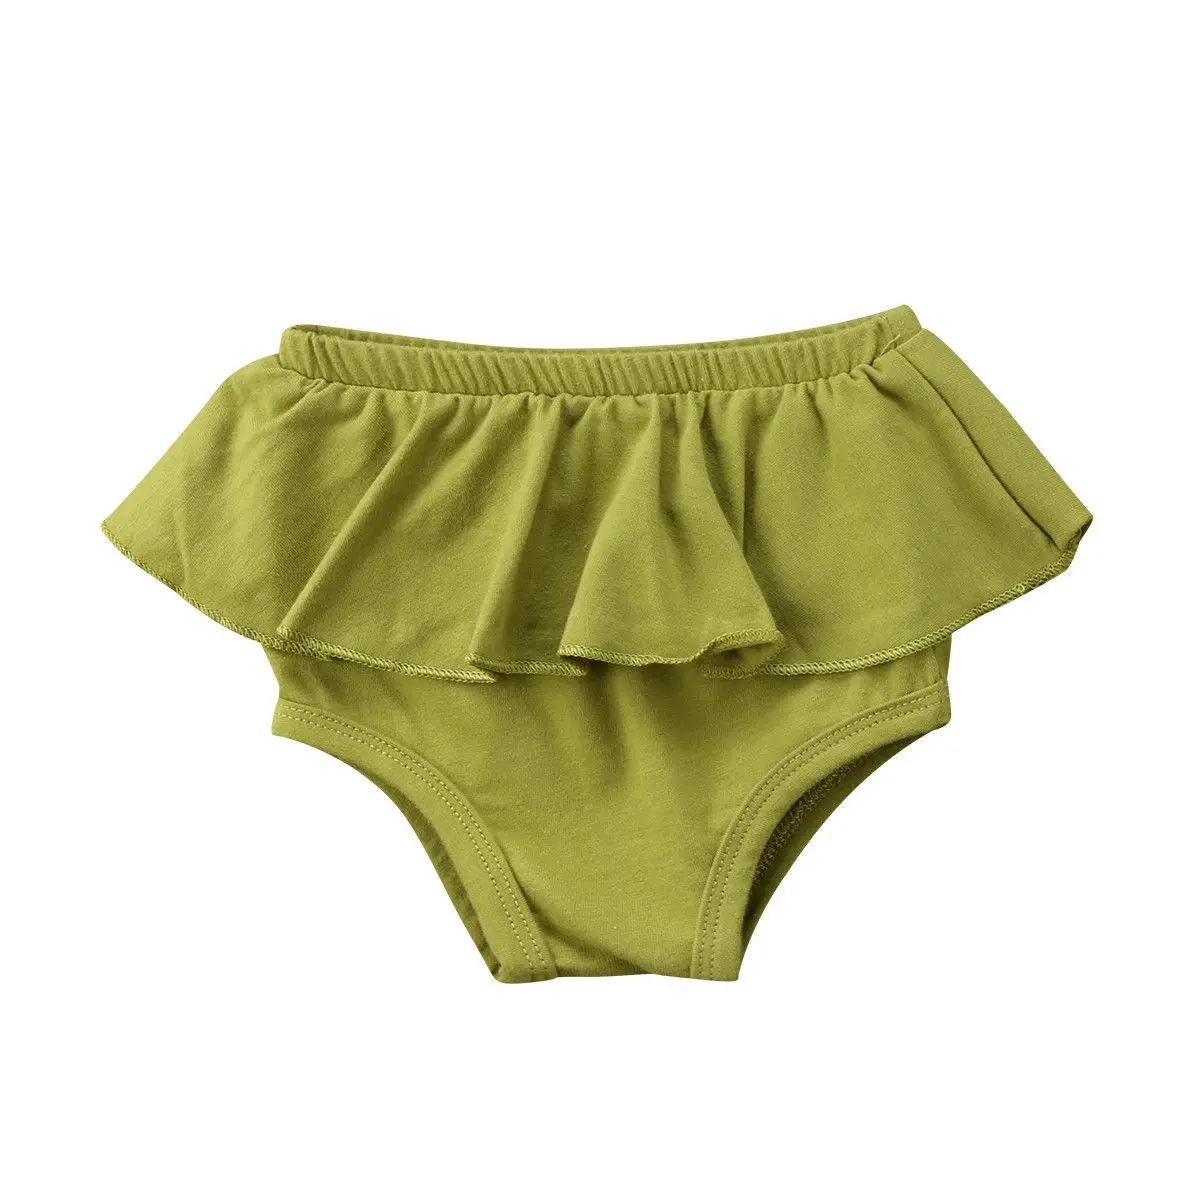 Шорты с оборками для новорожденных детей и девочек трусики-шаровары детские шорты от 0 до 24 месяцев - Цвет: Зеленый